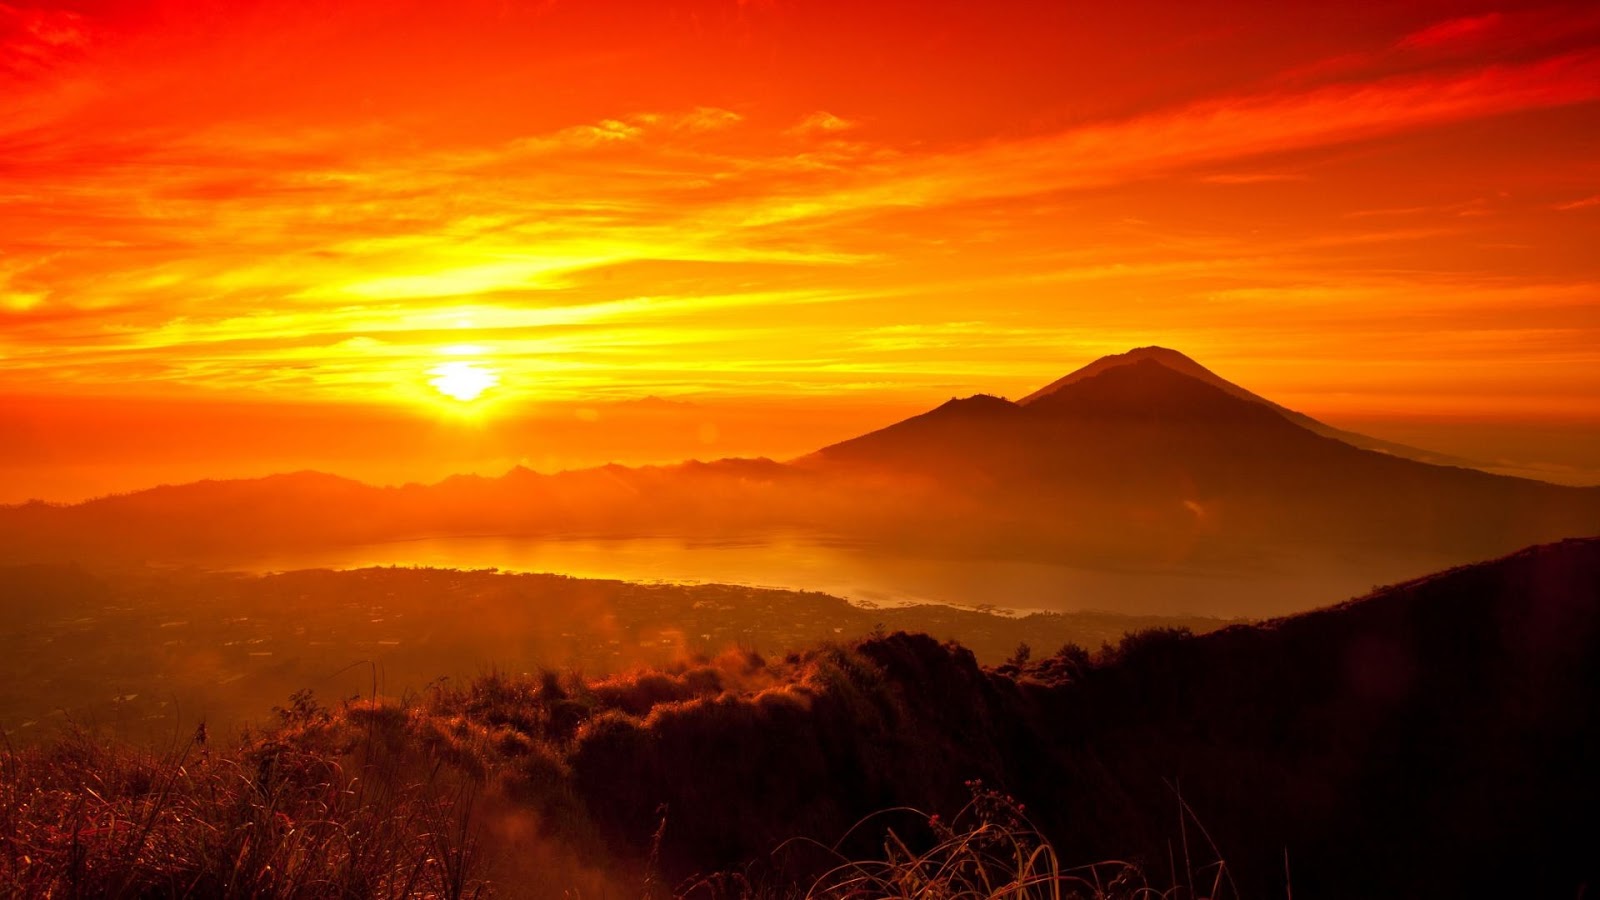 BANGGA SEJARAH: Eksotika Tersembunyi Gunung Bromo, Sunset Paling